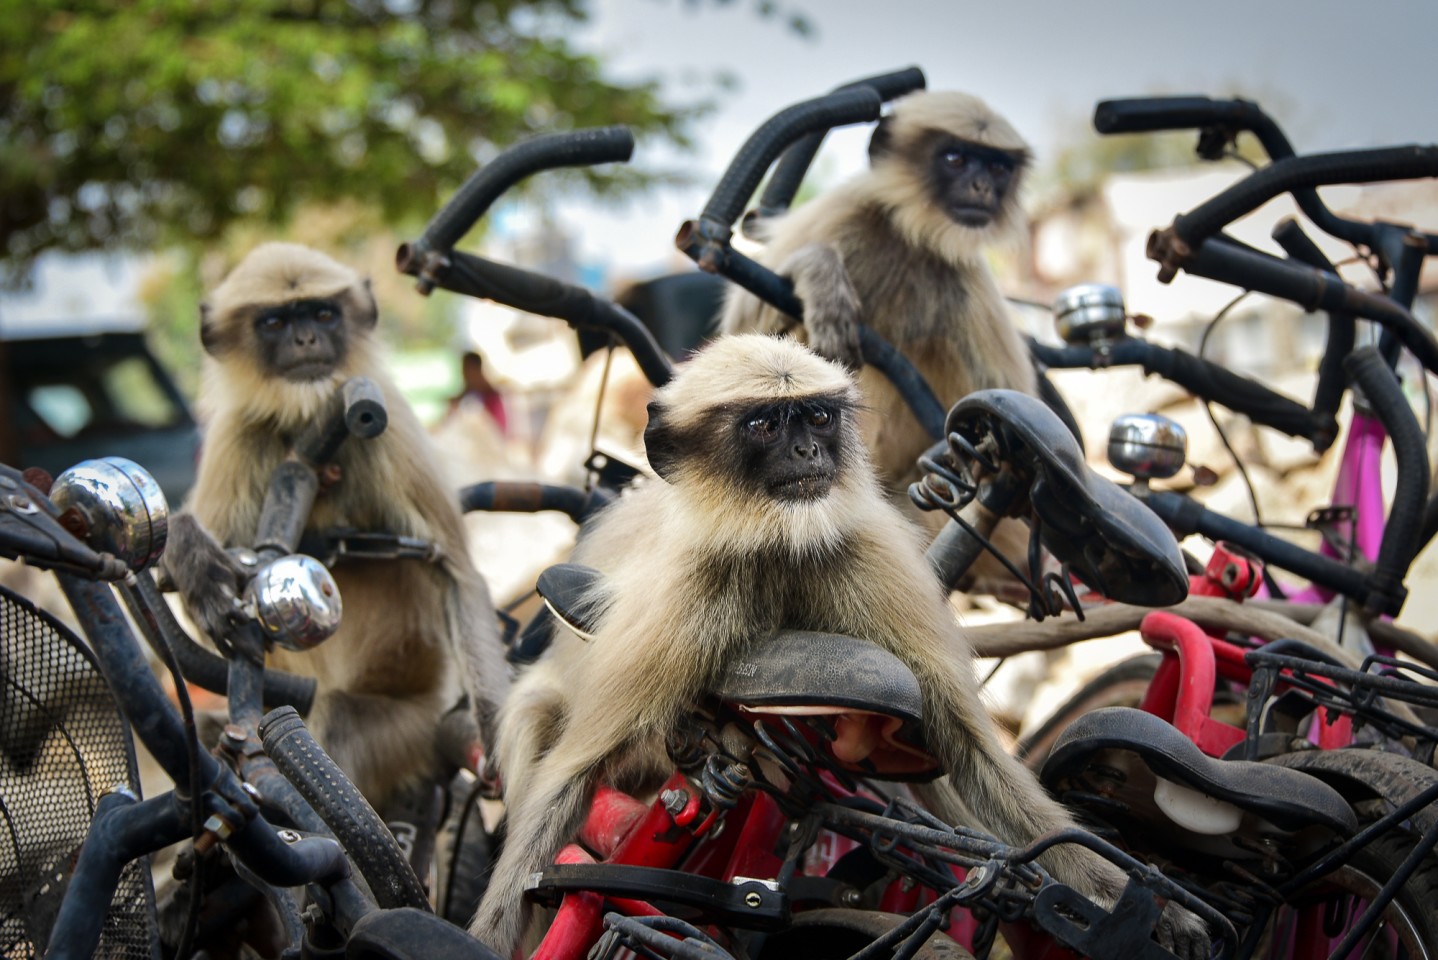 «Лангуры на кучу велосипедов в Хампи, Индия». Фото: Yevhen Samuchenko